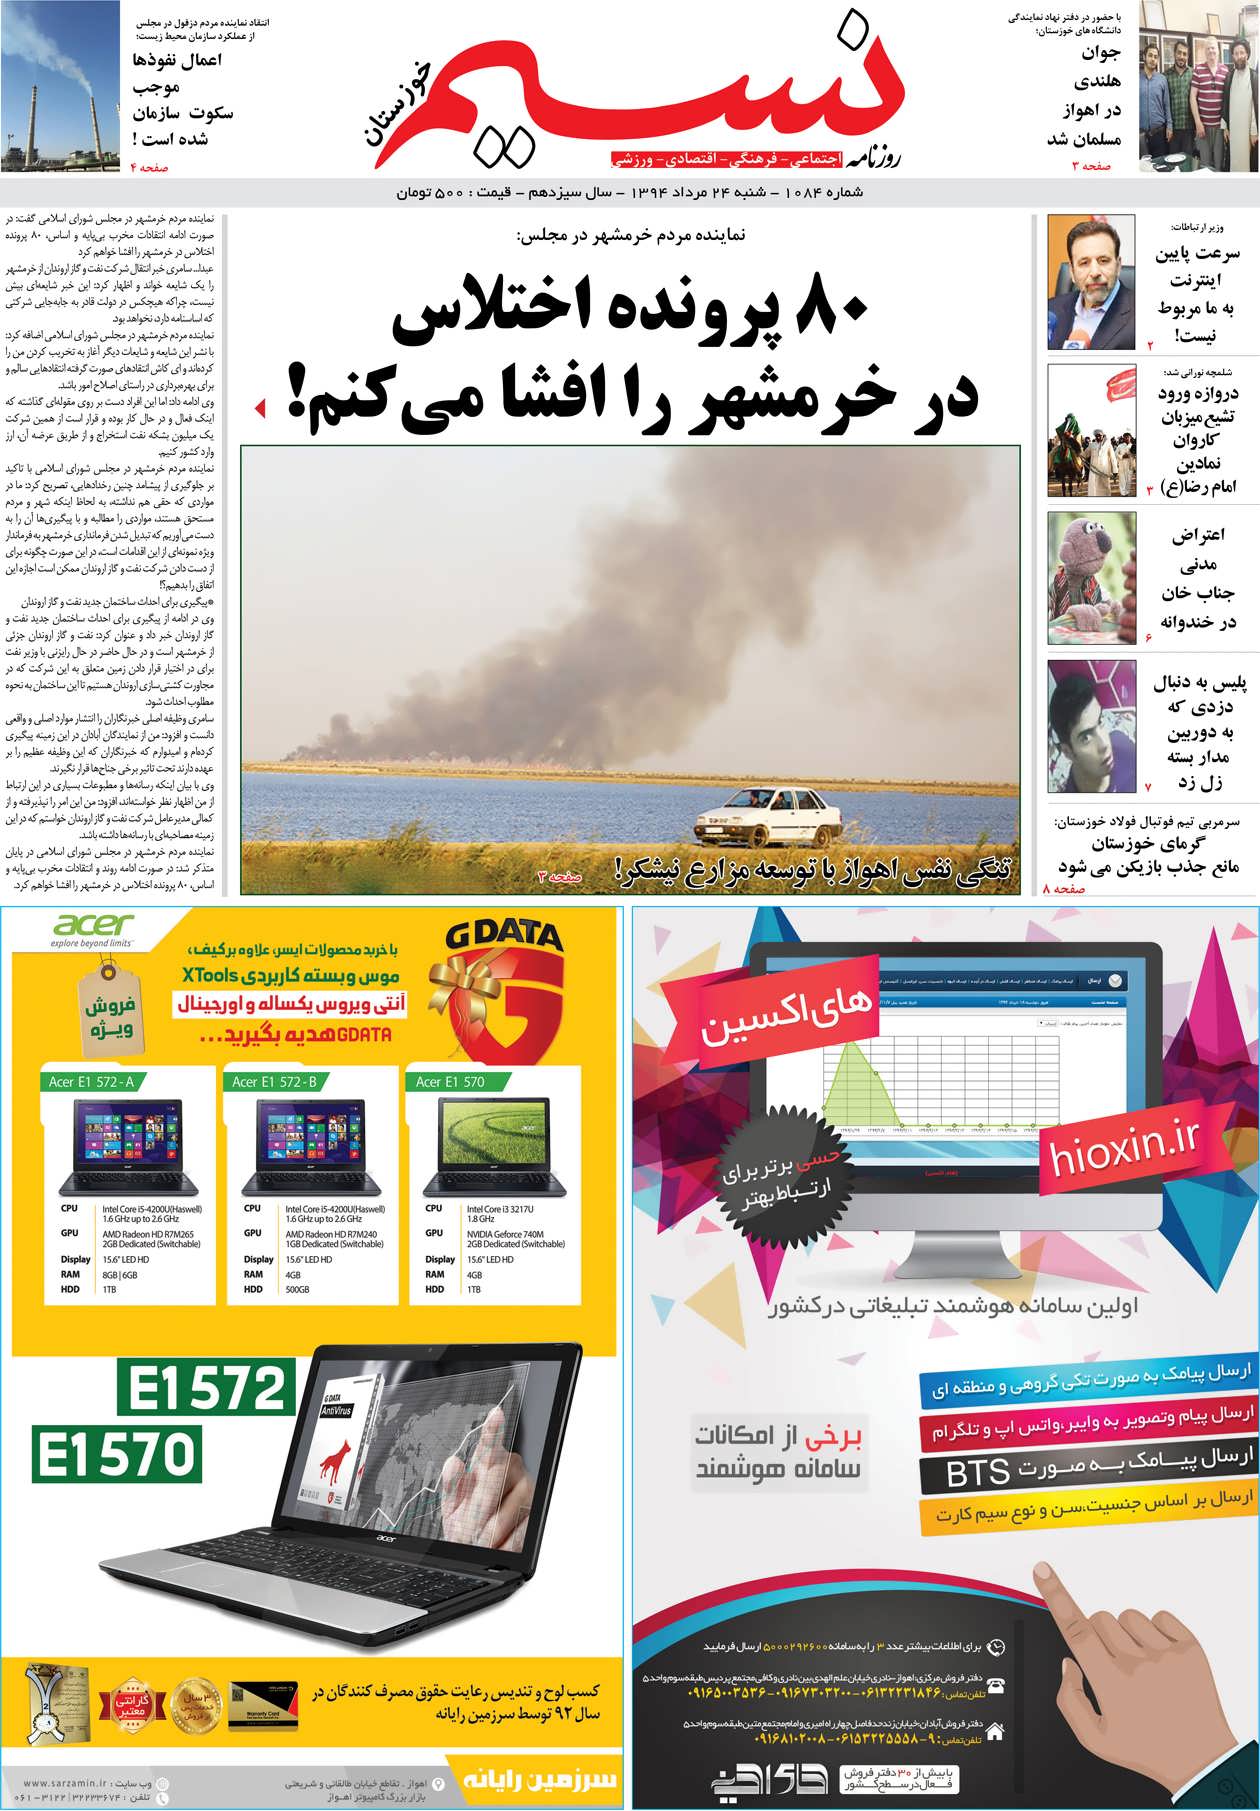 صفحه اصلی روزنامه نسیم شماره 1084